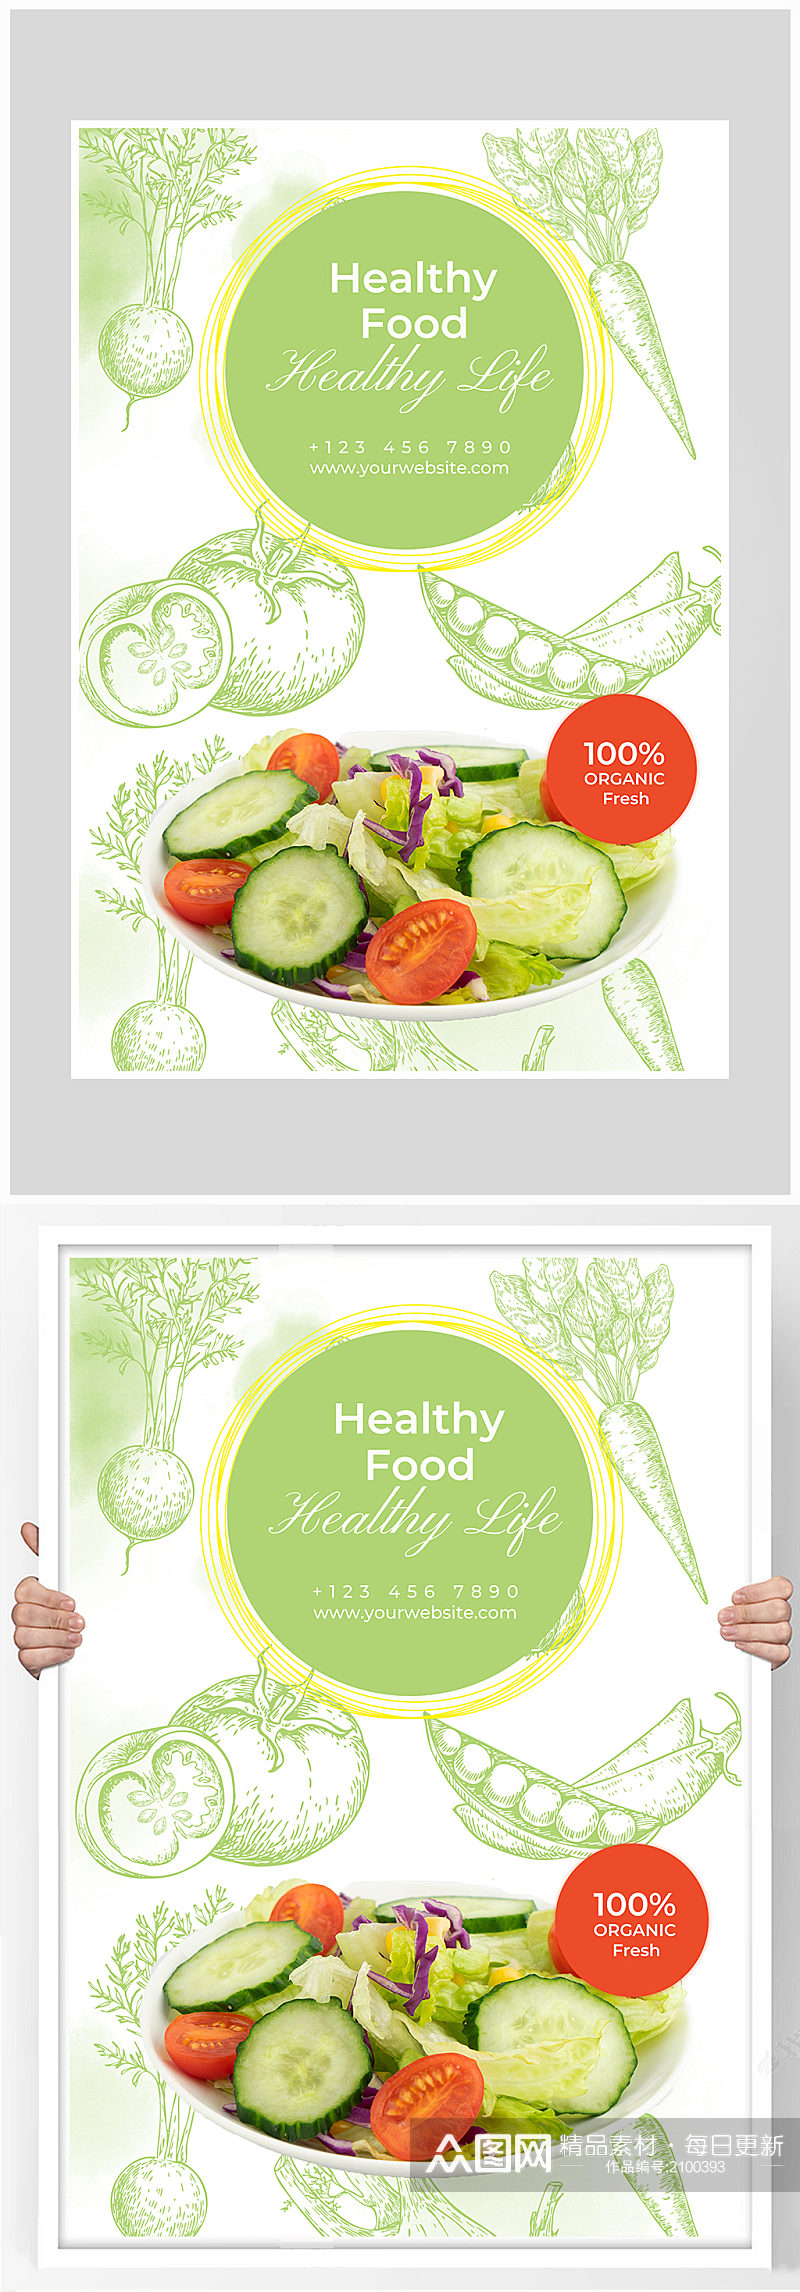 创意绿色健康沙拉蔬菜海报设计素材